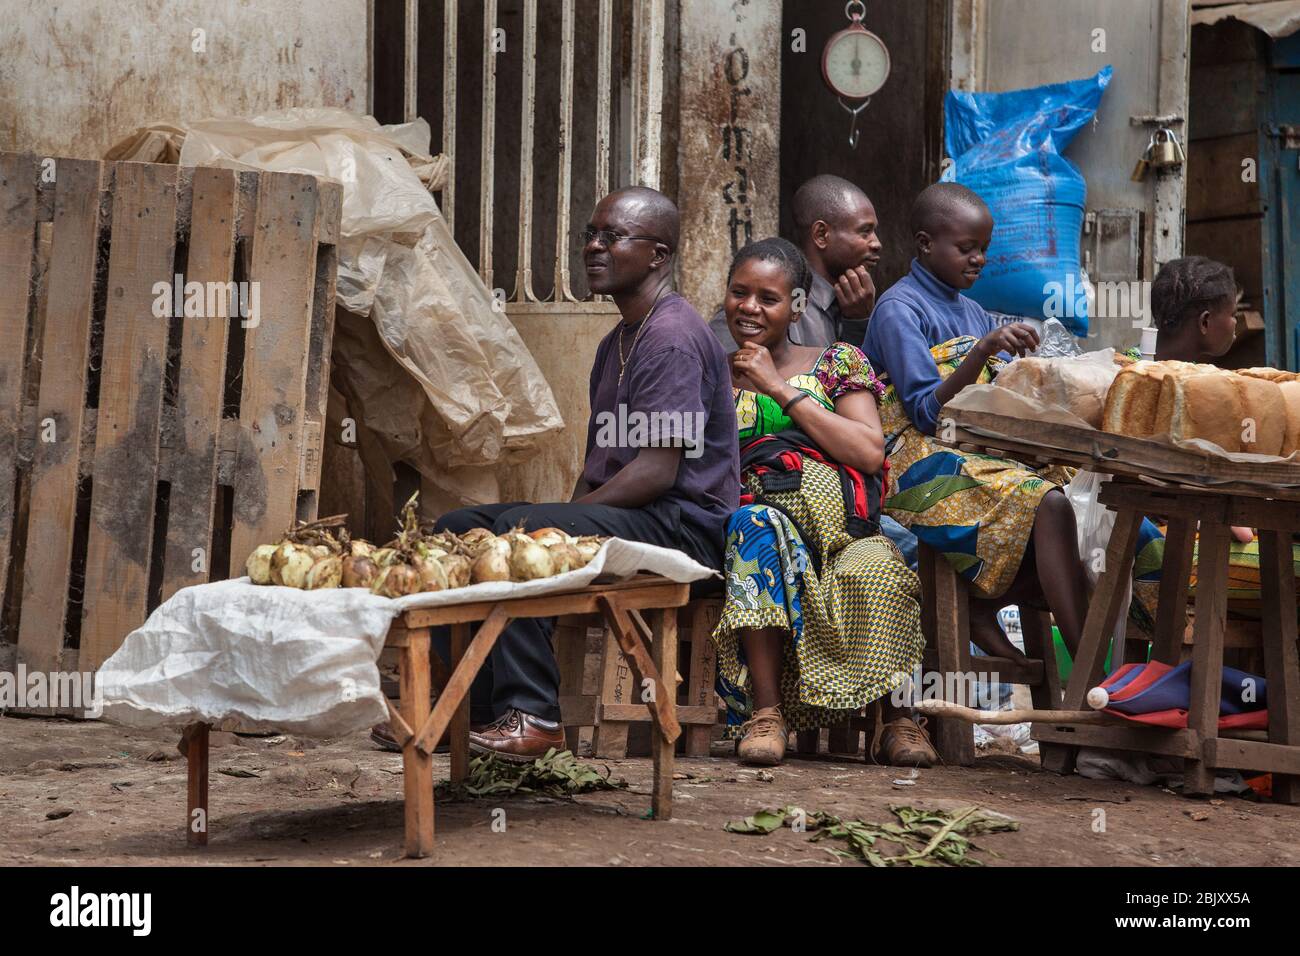 Bukavu, Demokratische Republik Kongo : Handel auf der Straße. Lächelndes afrikanisches kongolesisches Volk, das Gemüse verkauft Stockfoto